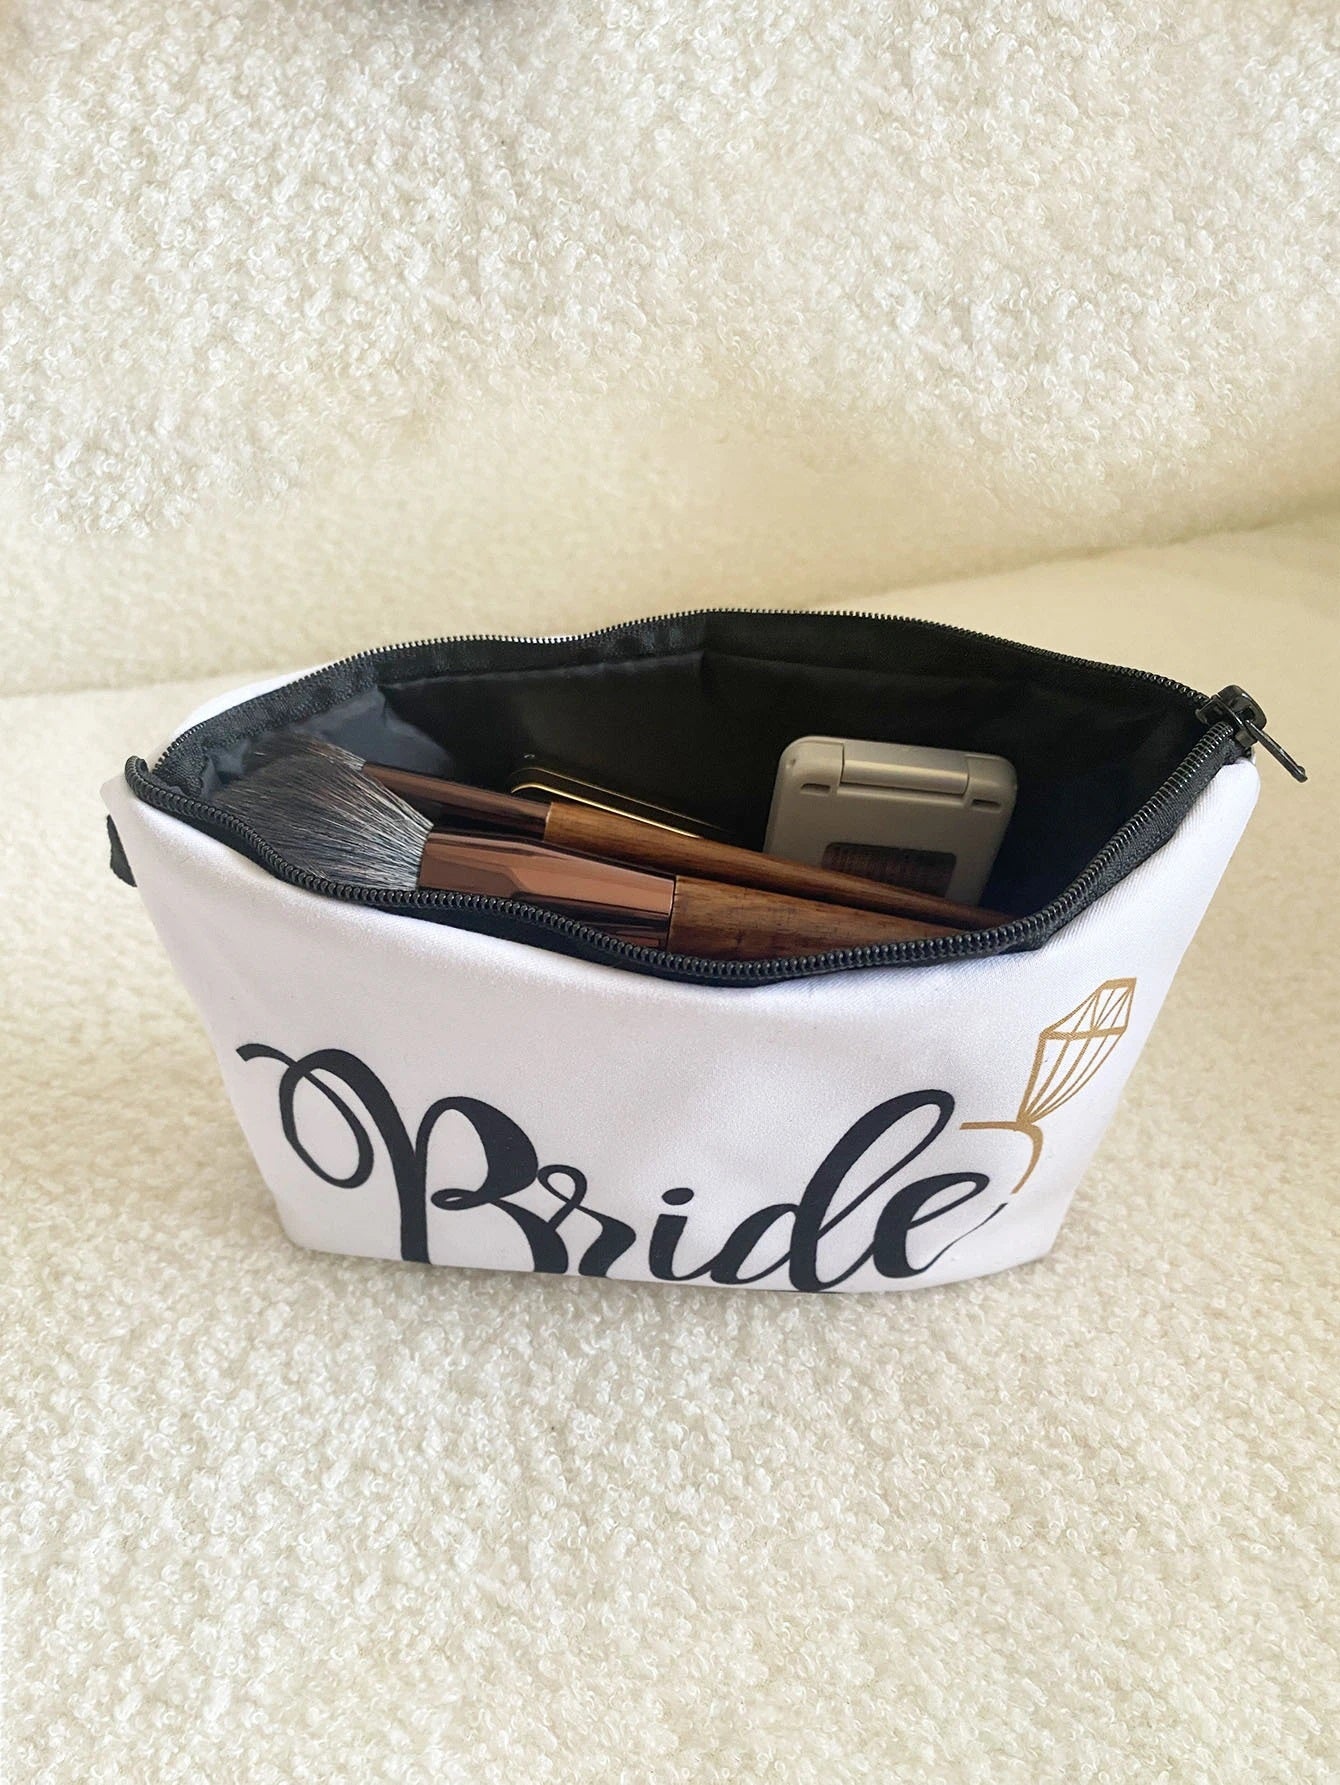 Bride Cosmetics Bag